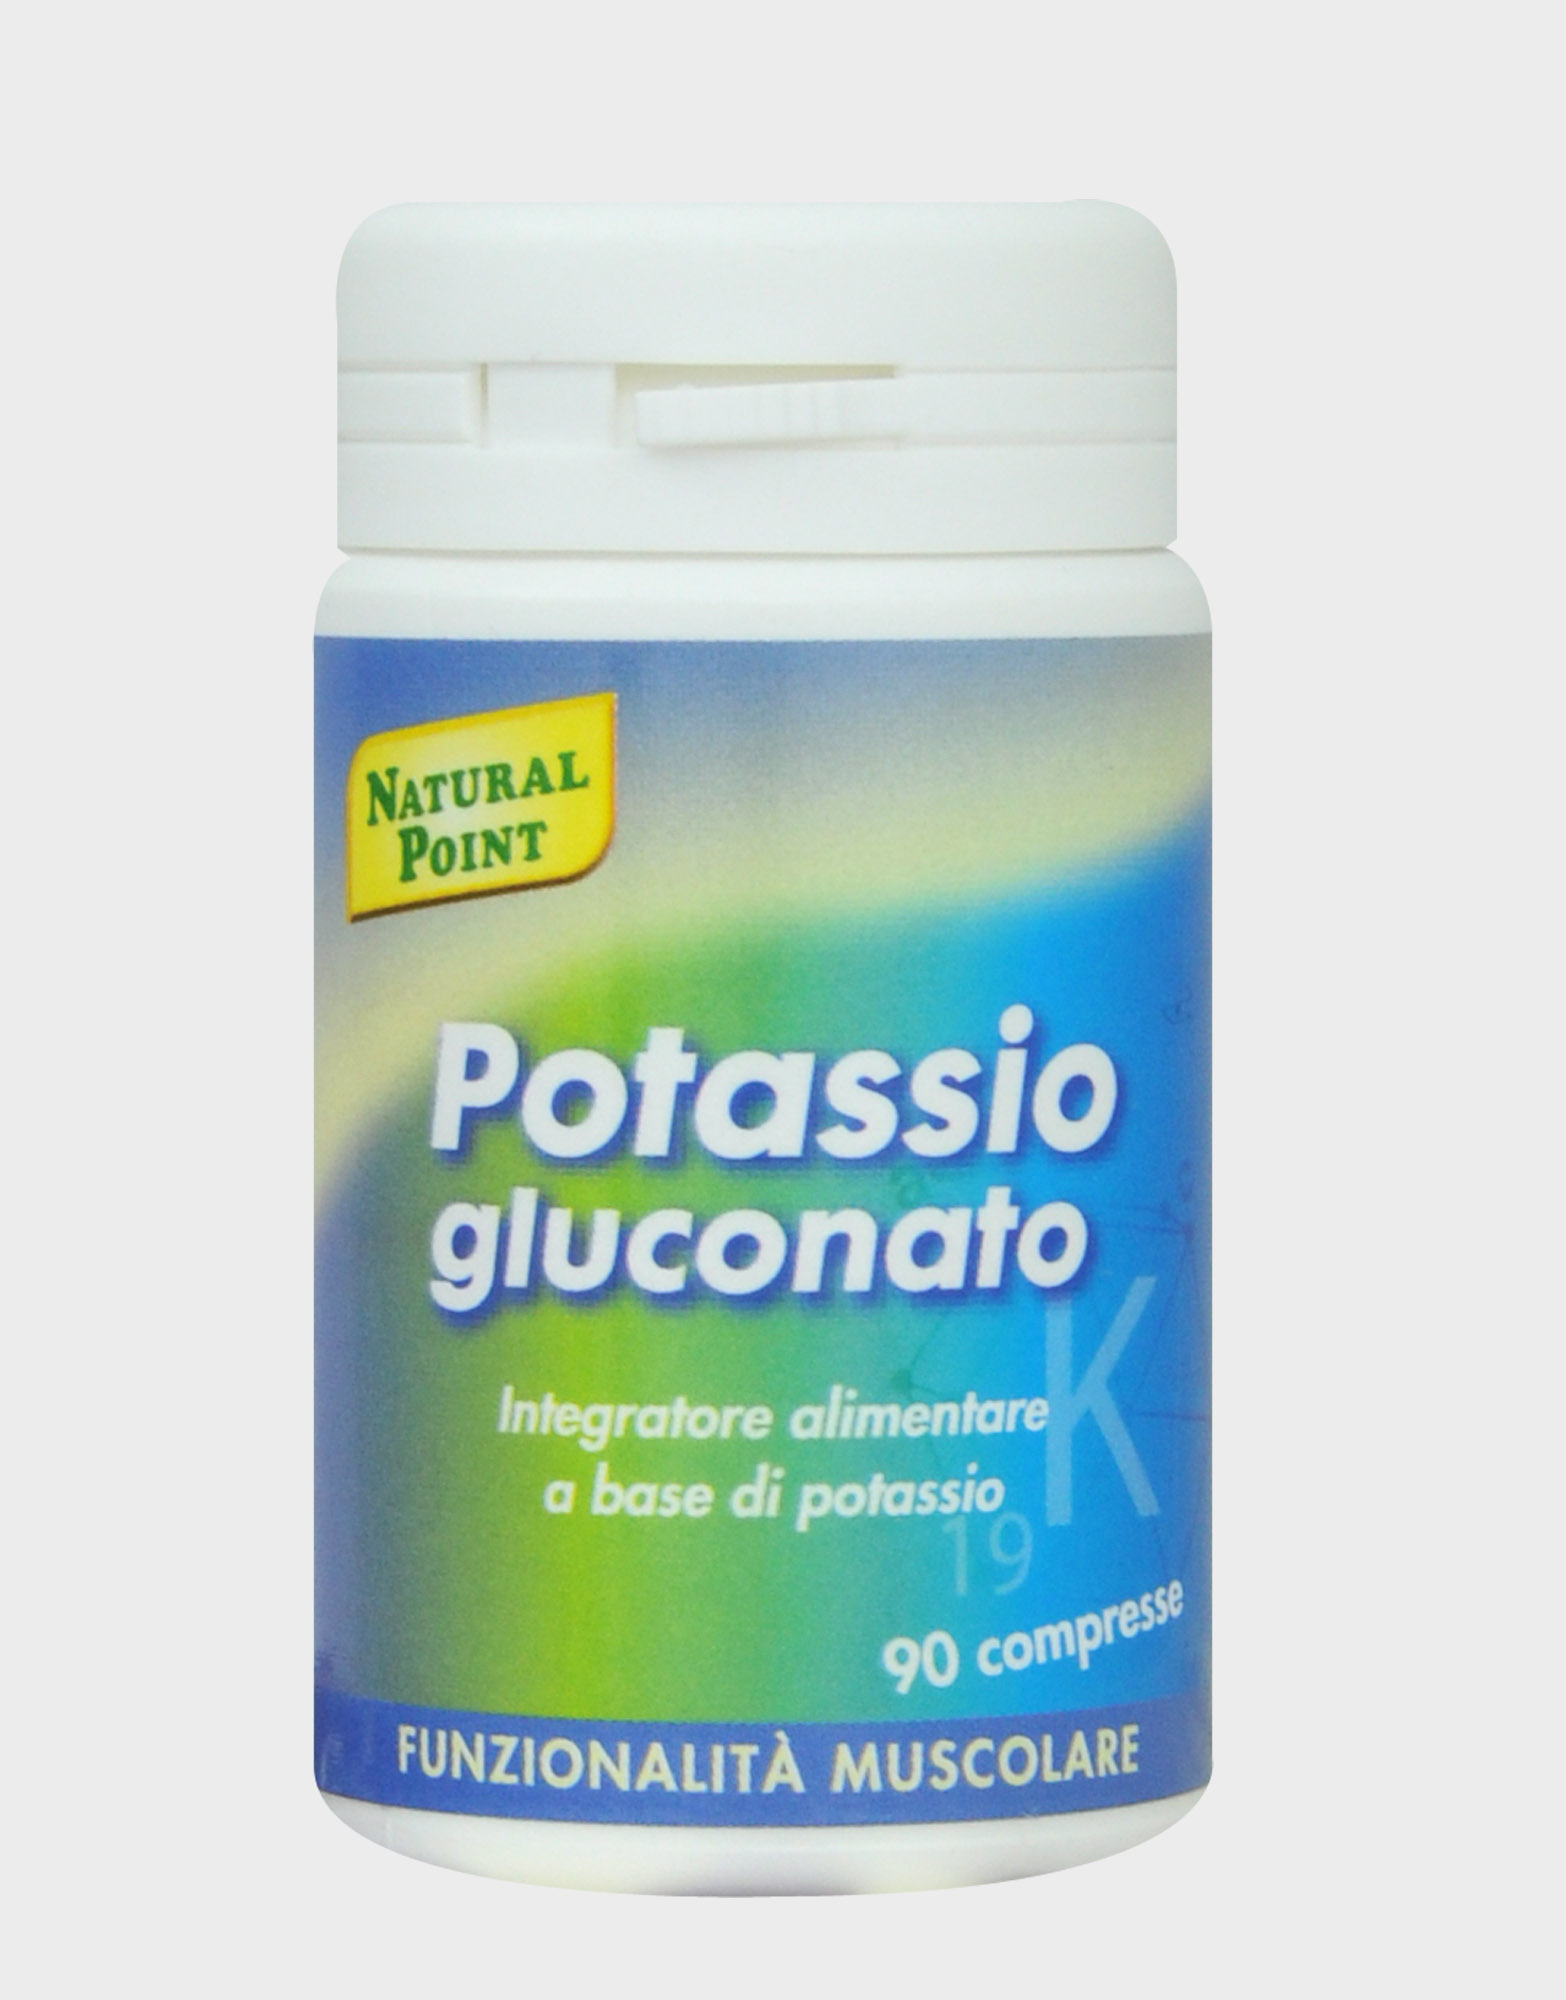 NATURAL POINT potassio gluconato integratore alimentare 90 compresse